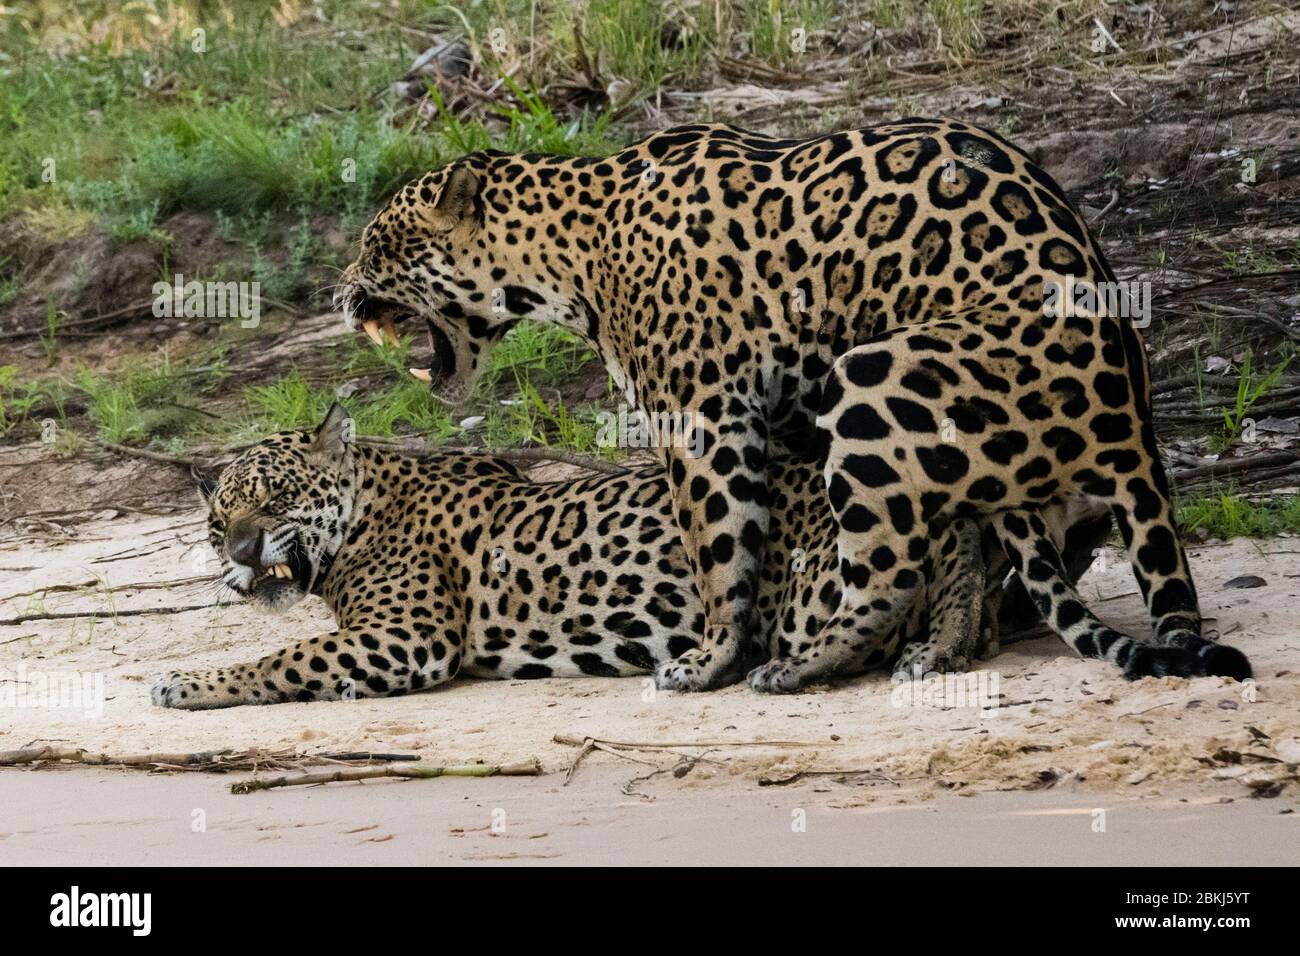 Jaguars (Panthera onca) mating, Pantanal, Mato Grosso, Brazil Stock Photo